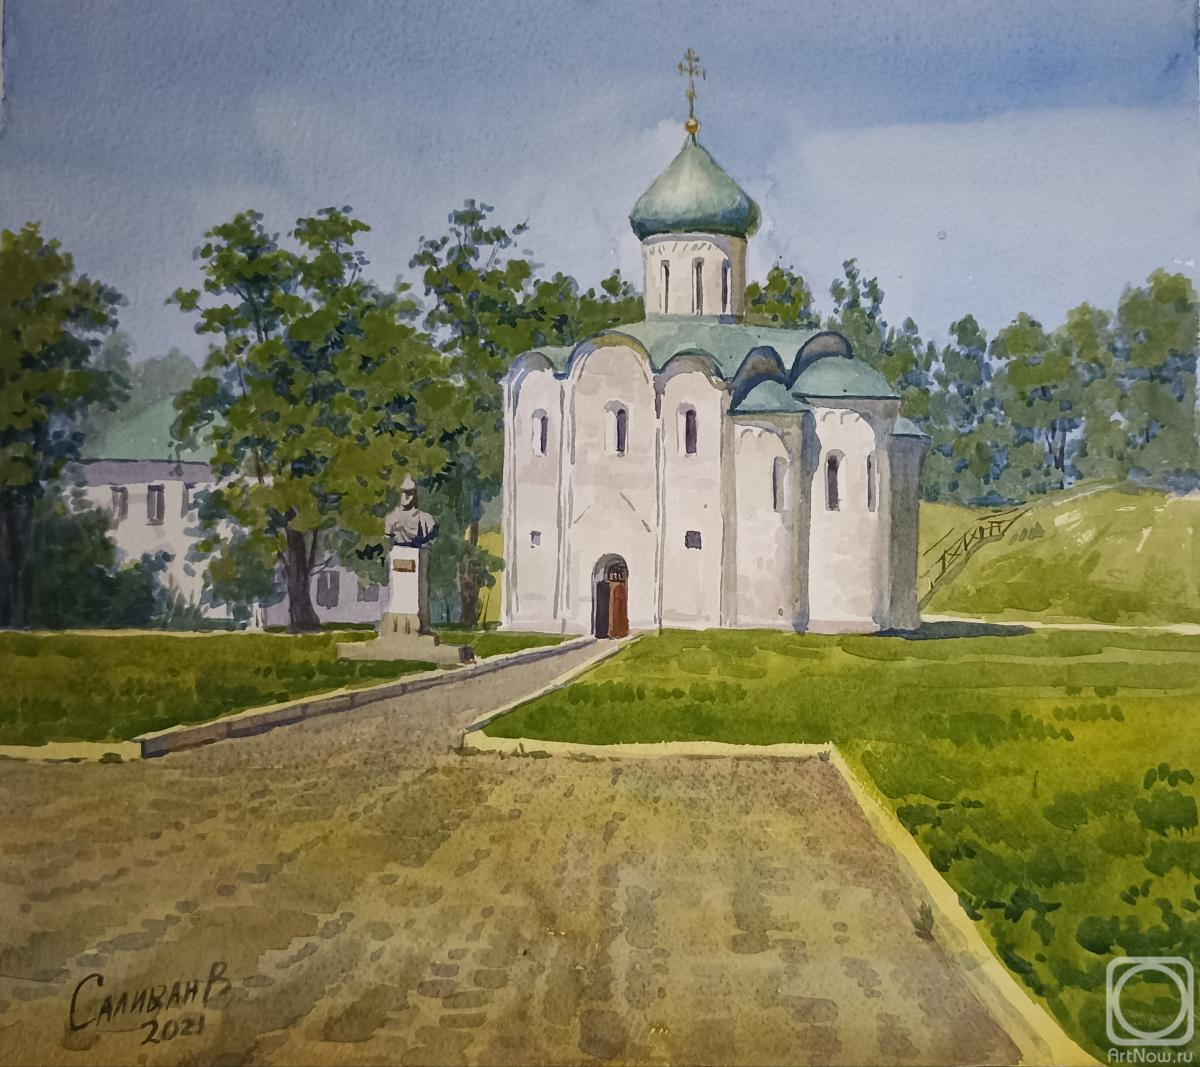 Salivan Varvara. Spaso-Preobrazhensky Cathedral